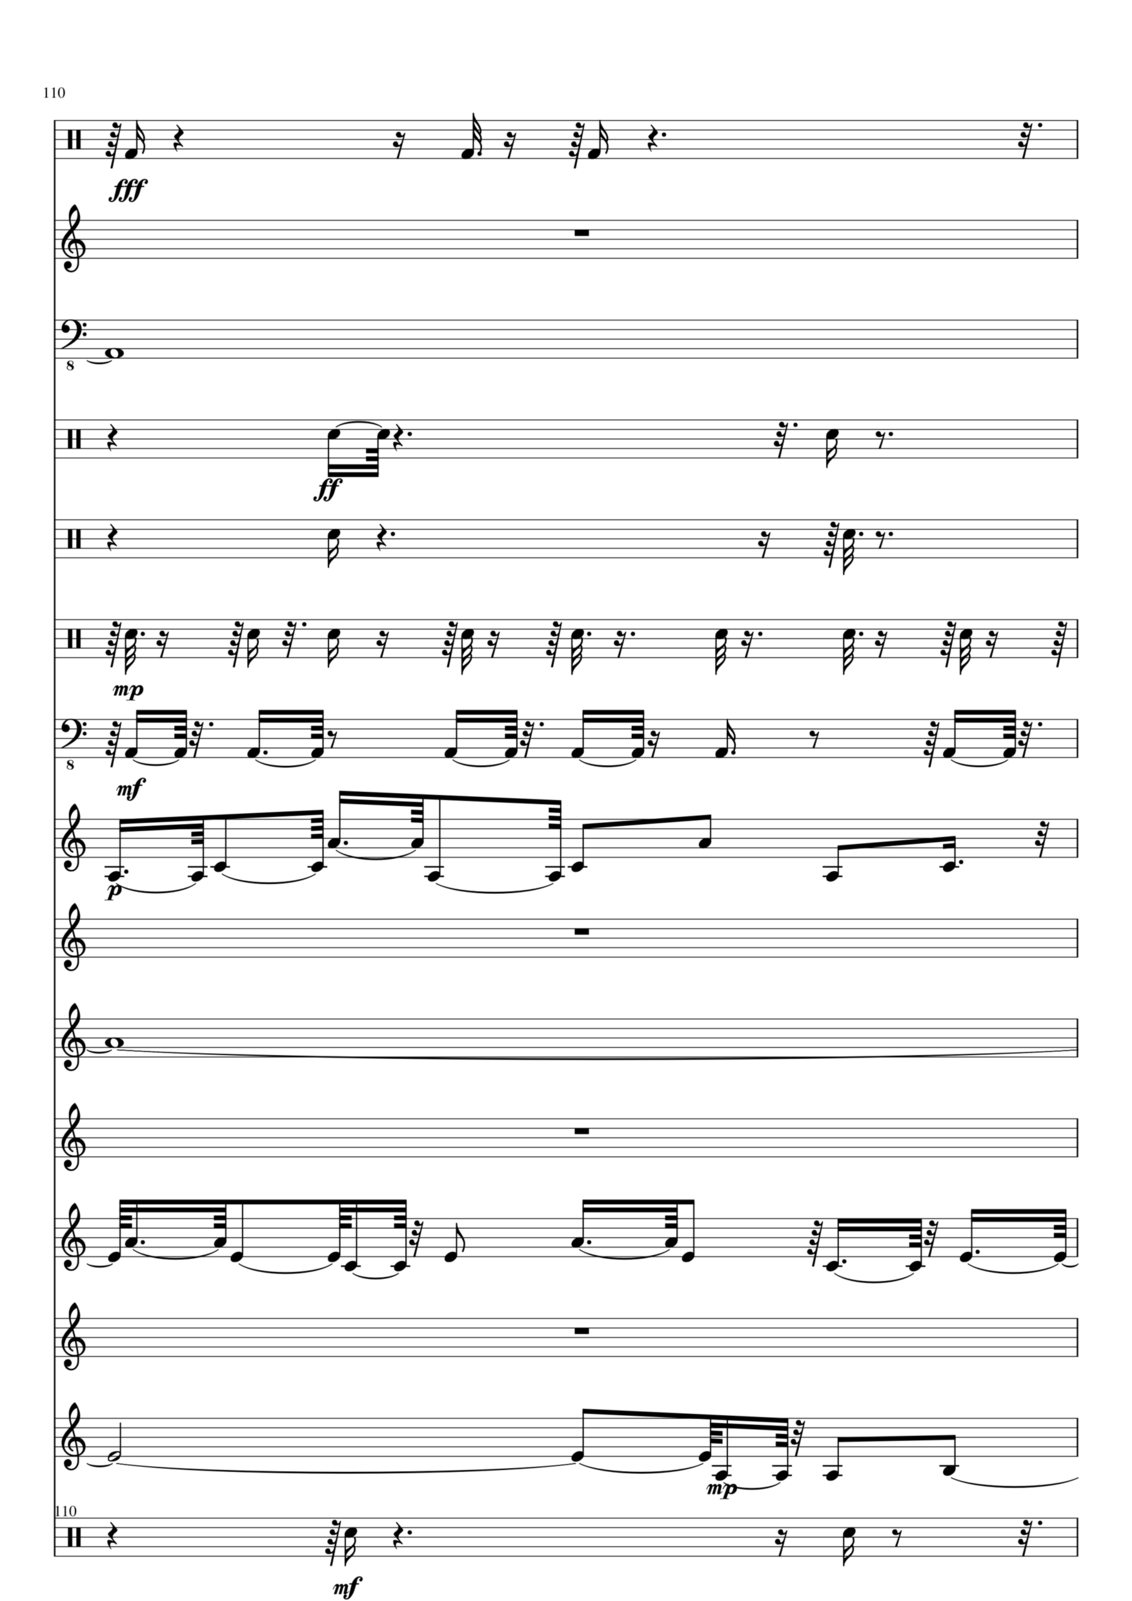 Utro polinyi slide, Image 110